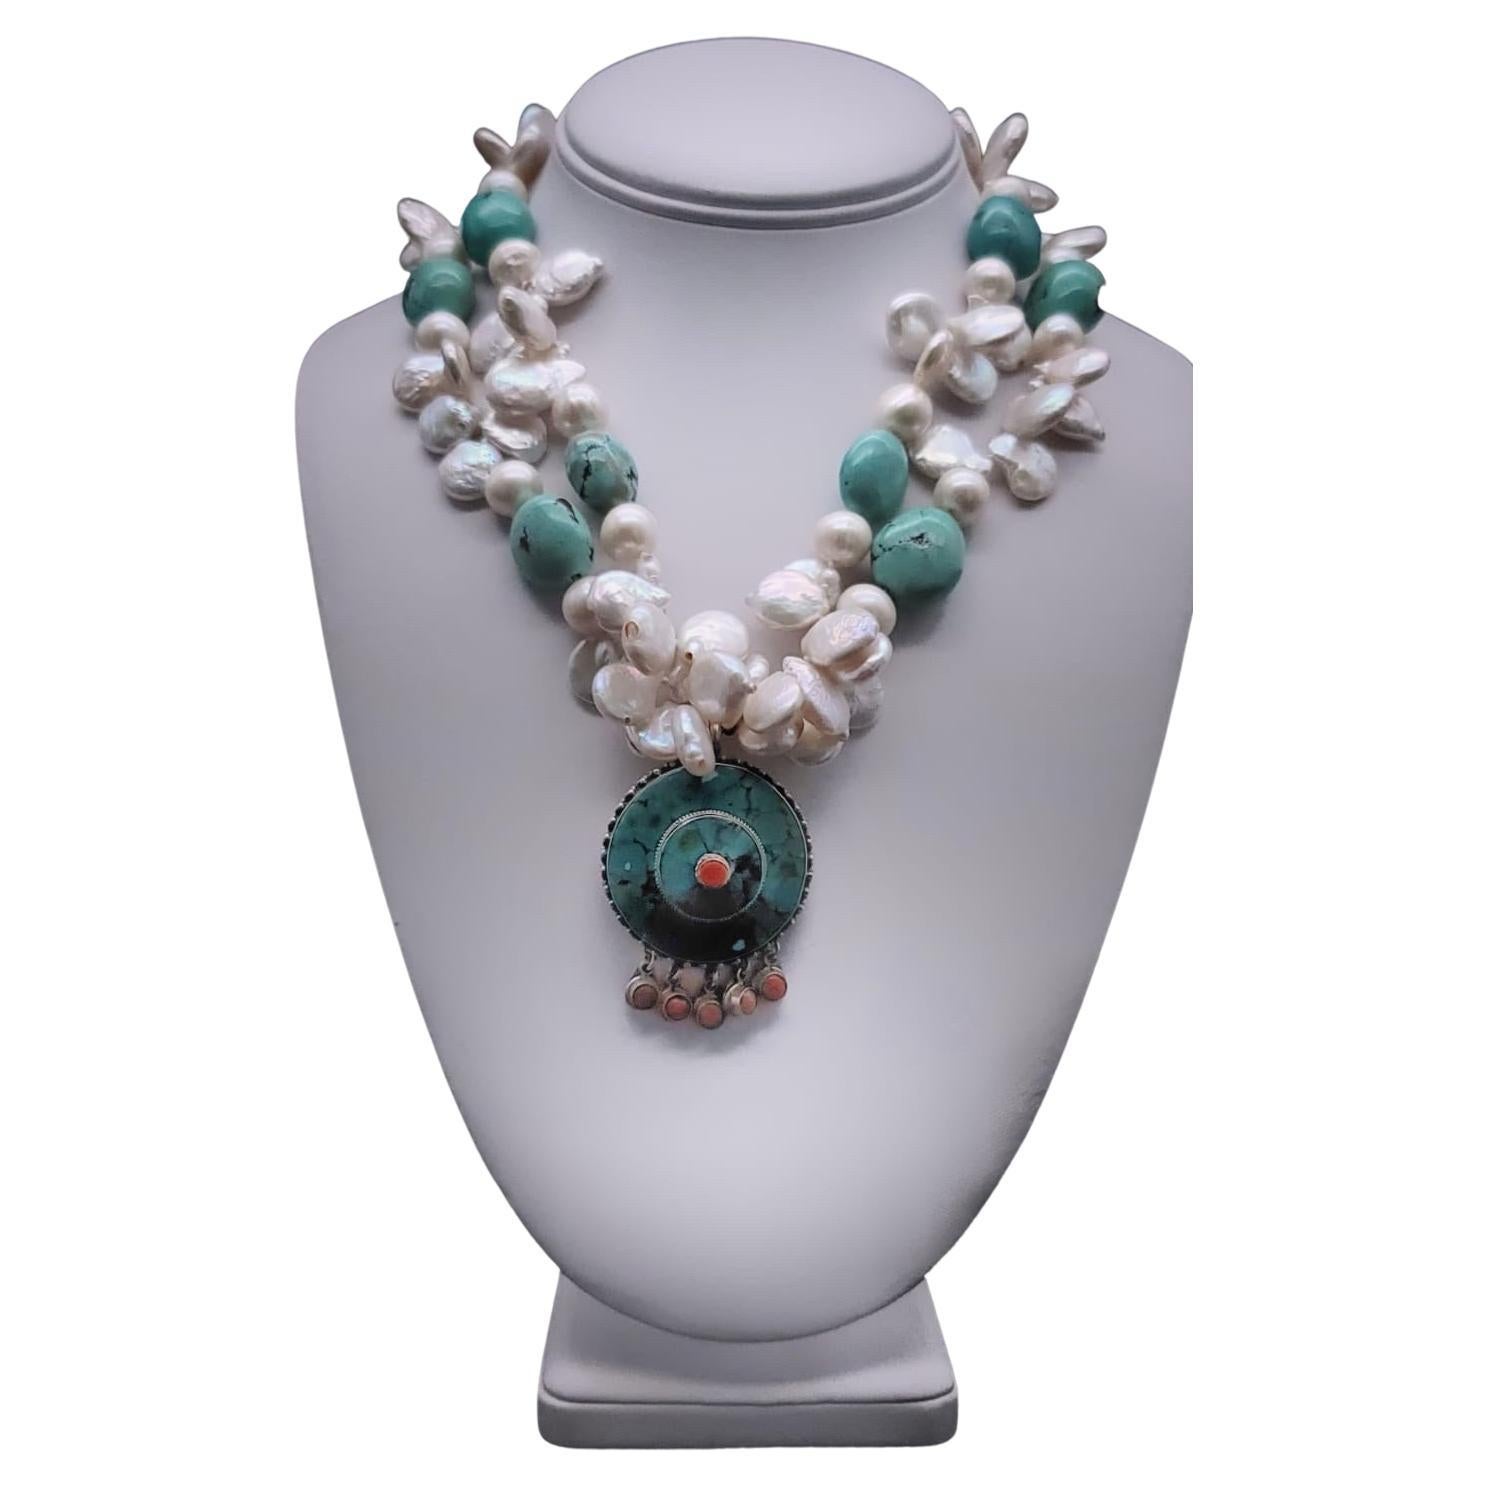 Bezaubernde Halskette aus Türkis und Perlen von A.Jeschel.